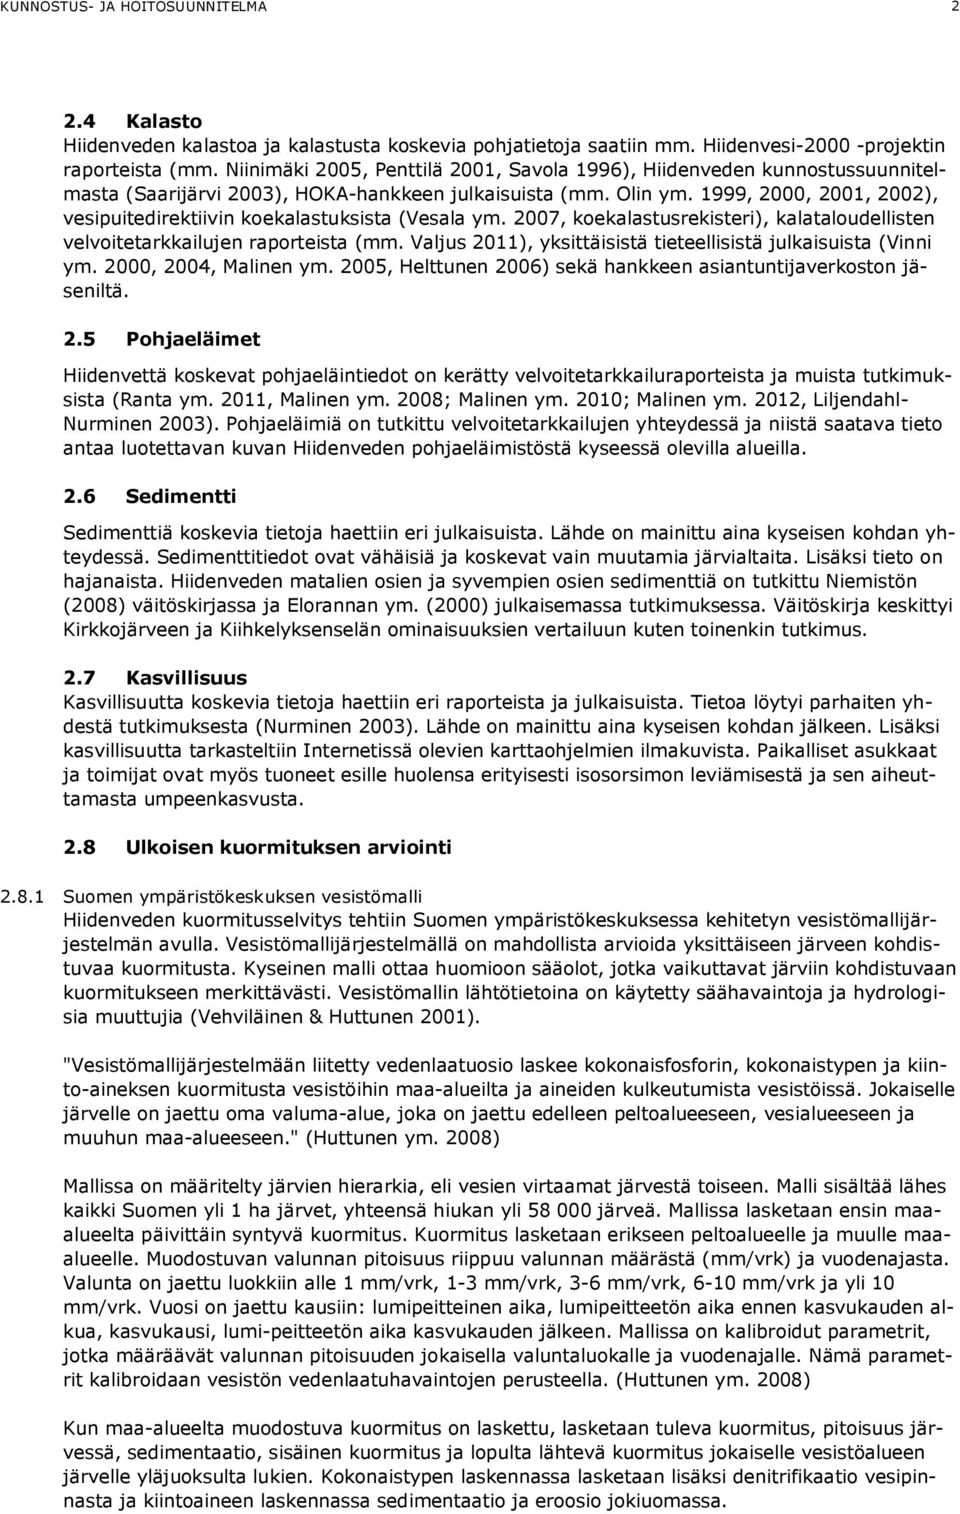 1999, 2000, 2001, 2002), vesipuitedirektiivin koekalastuksista (Vesala ym. 2007, koekalastusrekisteri), kalataloudellisten velvoitetarkkailujen raporteista (mm.